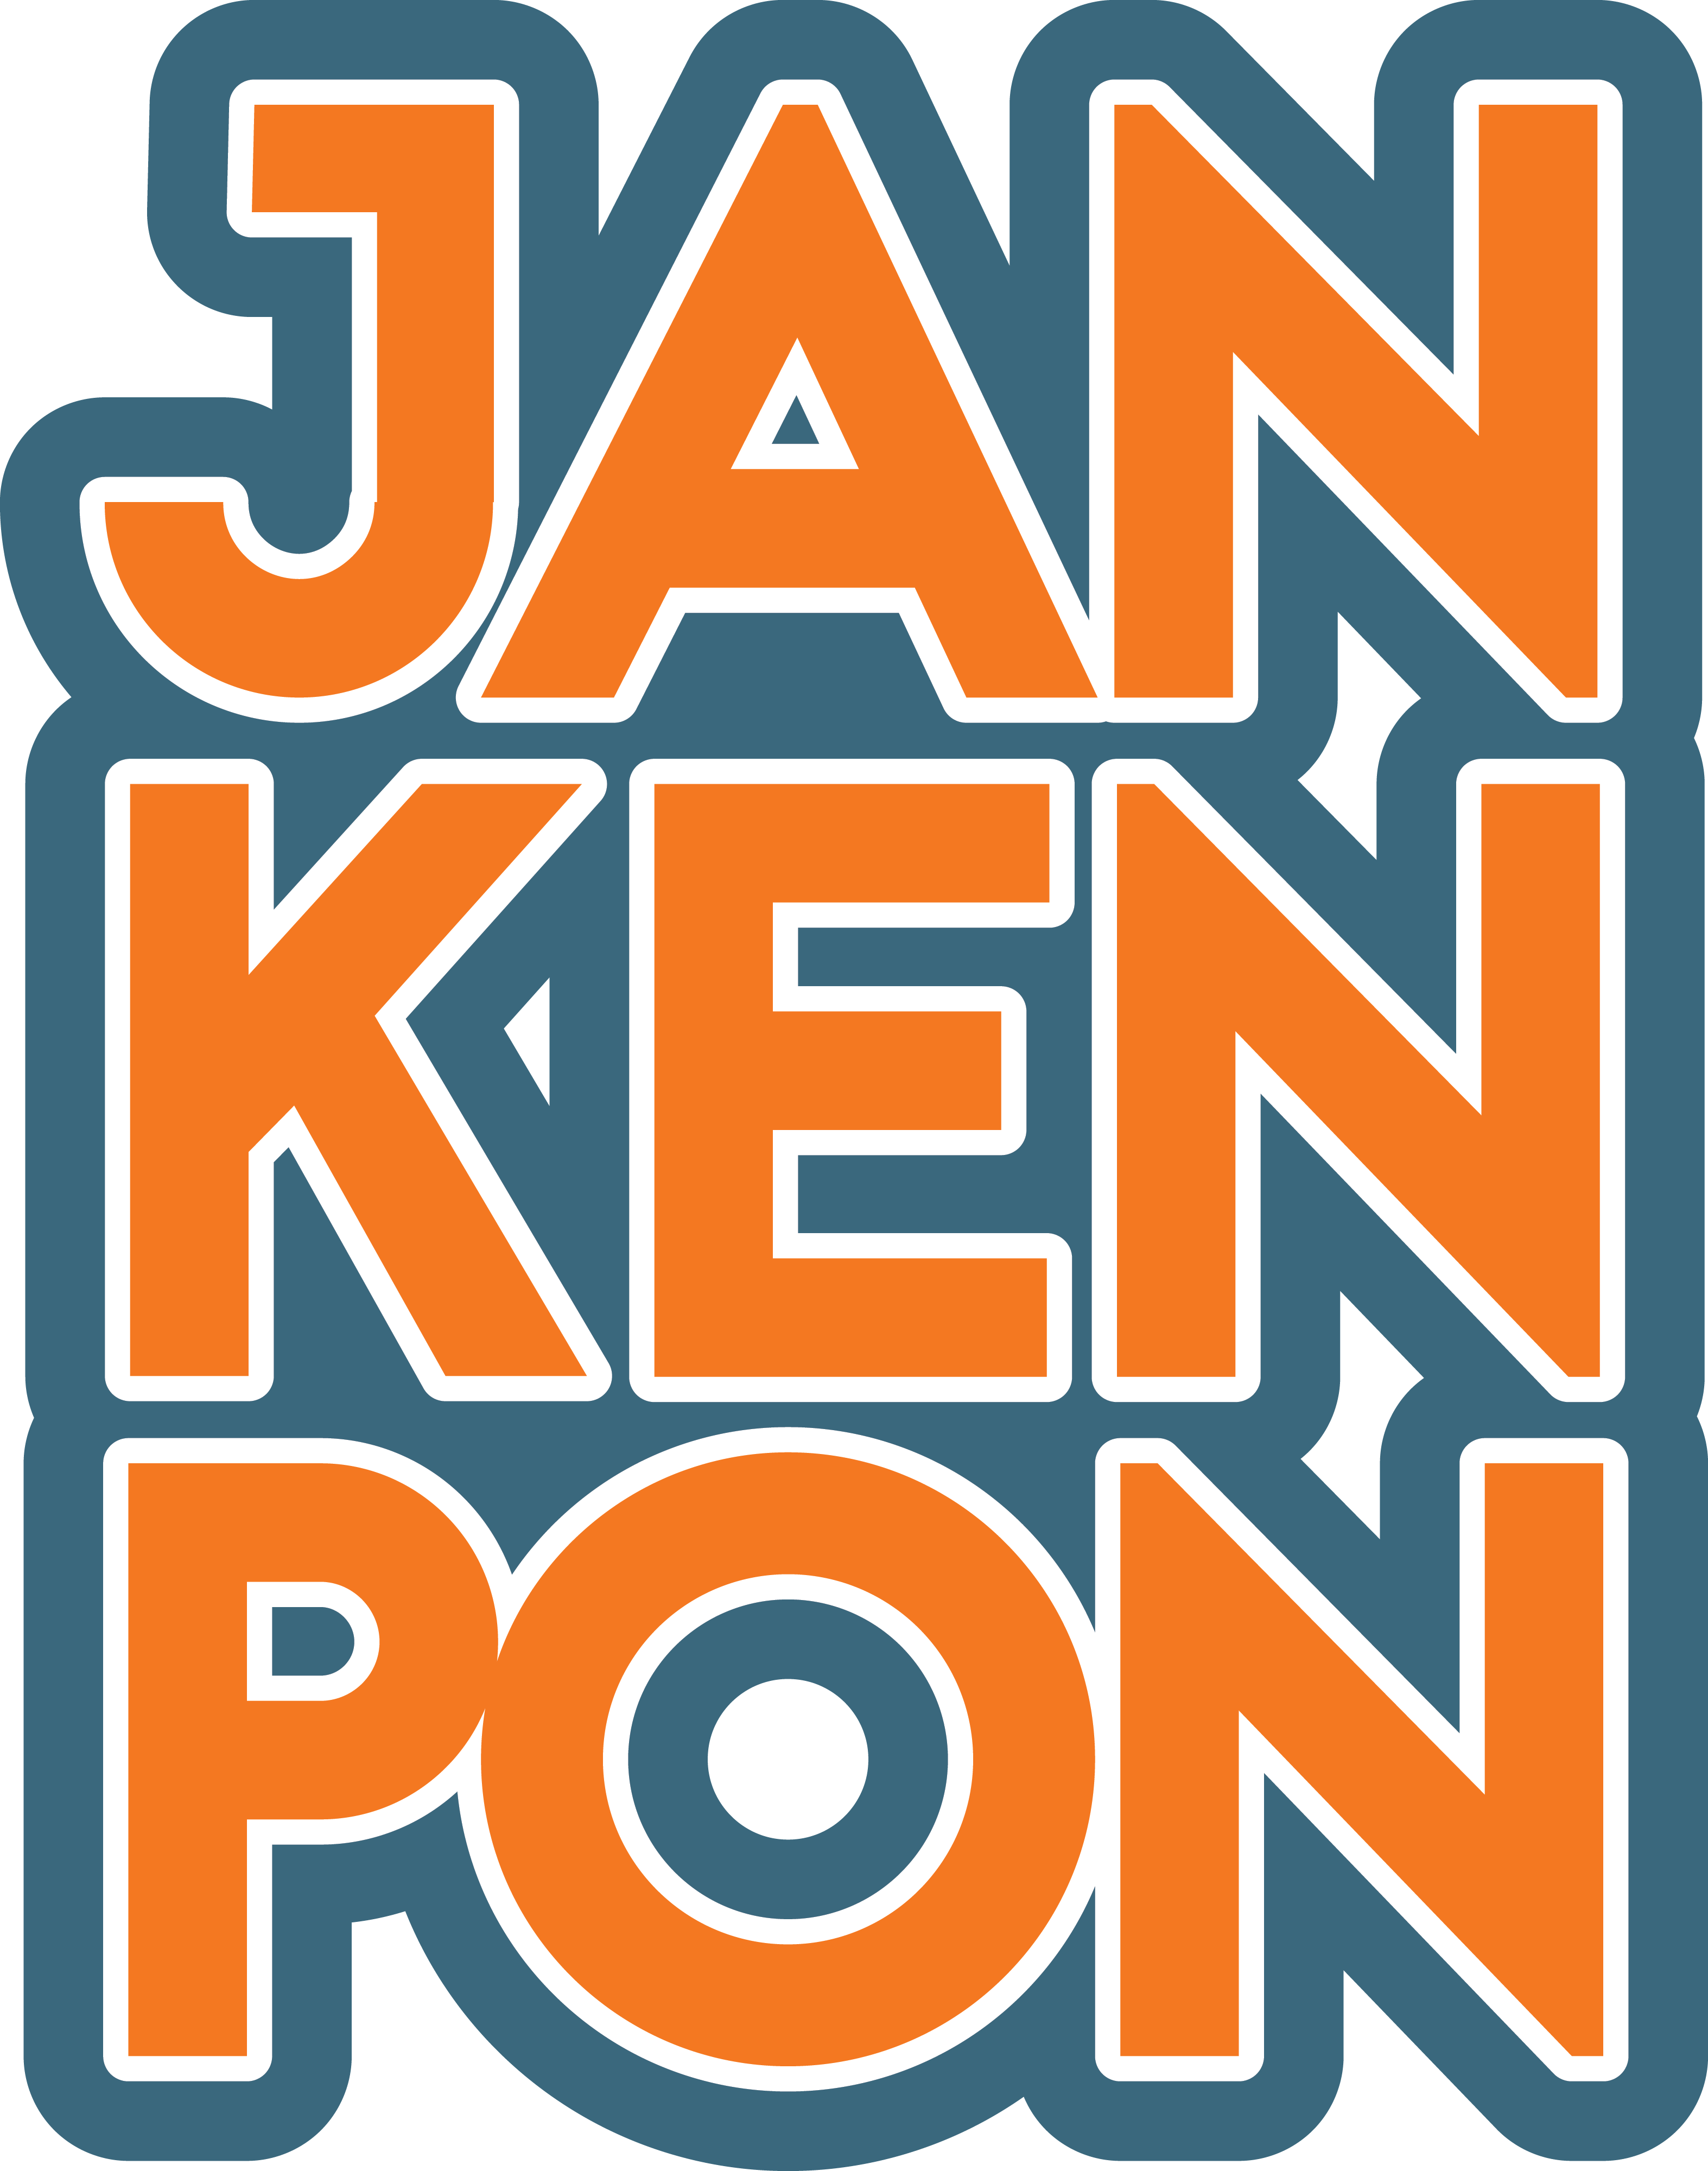 Jan Ken Pon